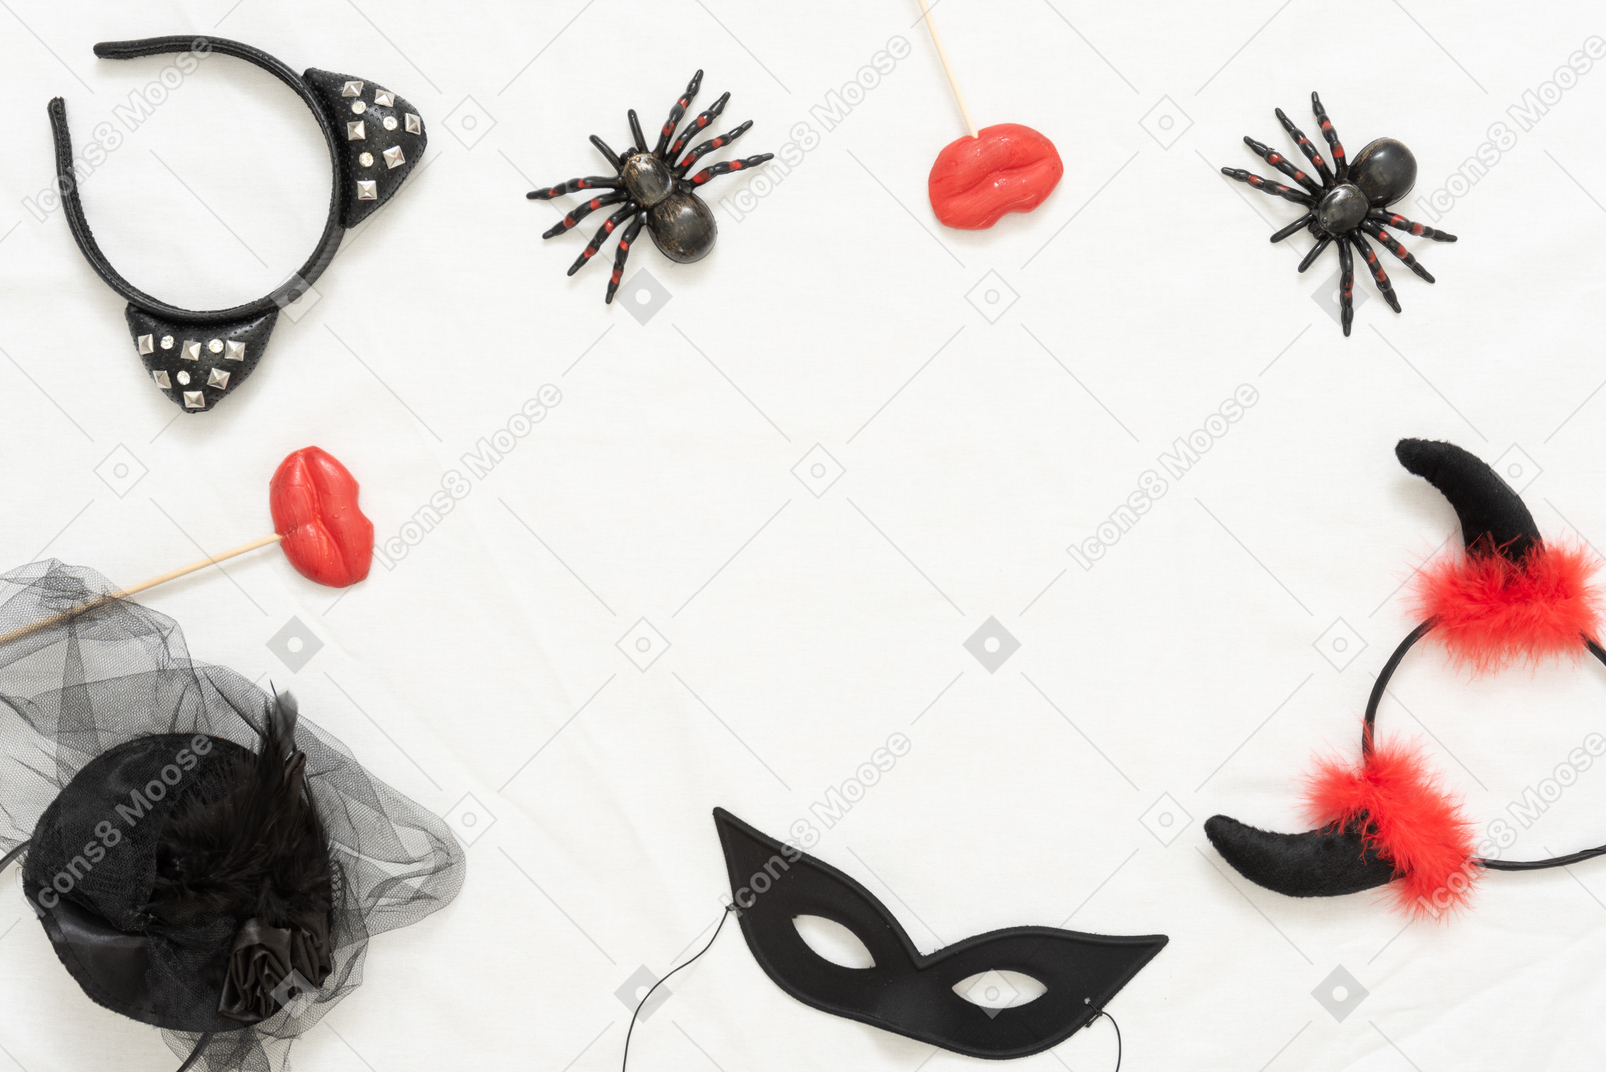 Cintas de halloween diferentes, arañas de juguete y una máscara negra.